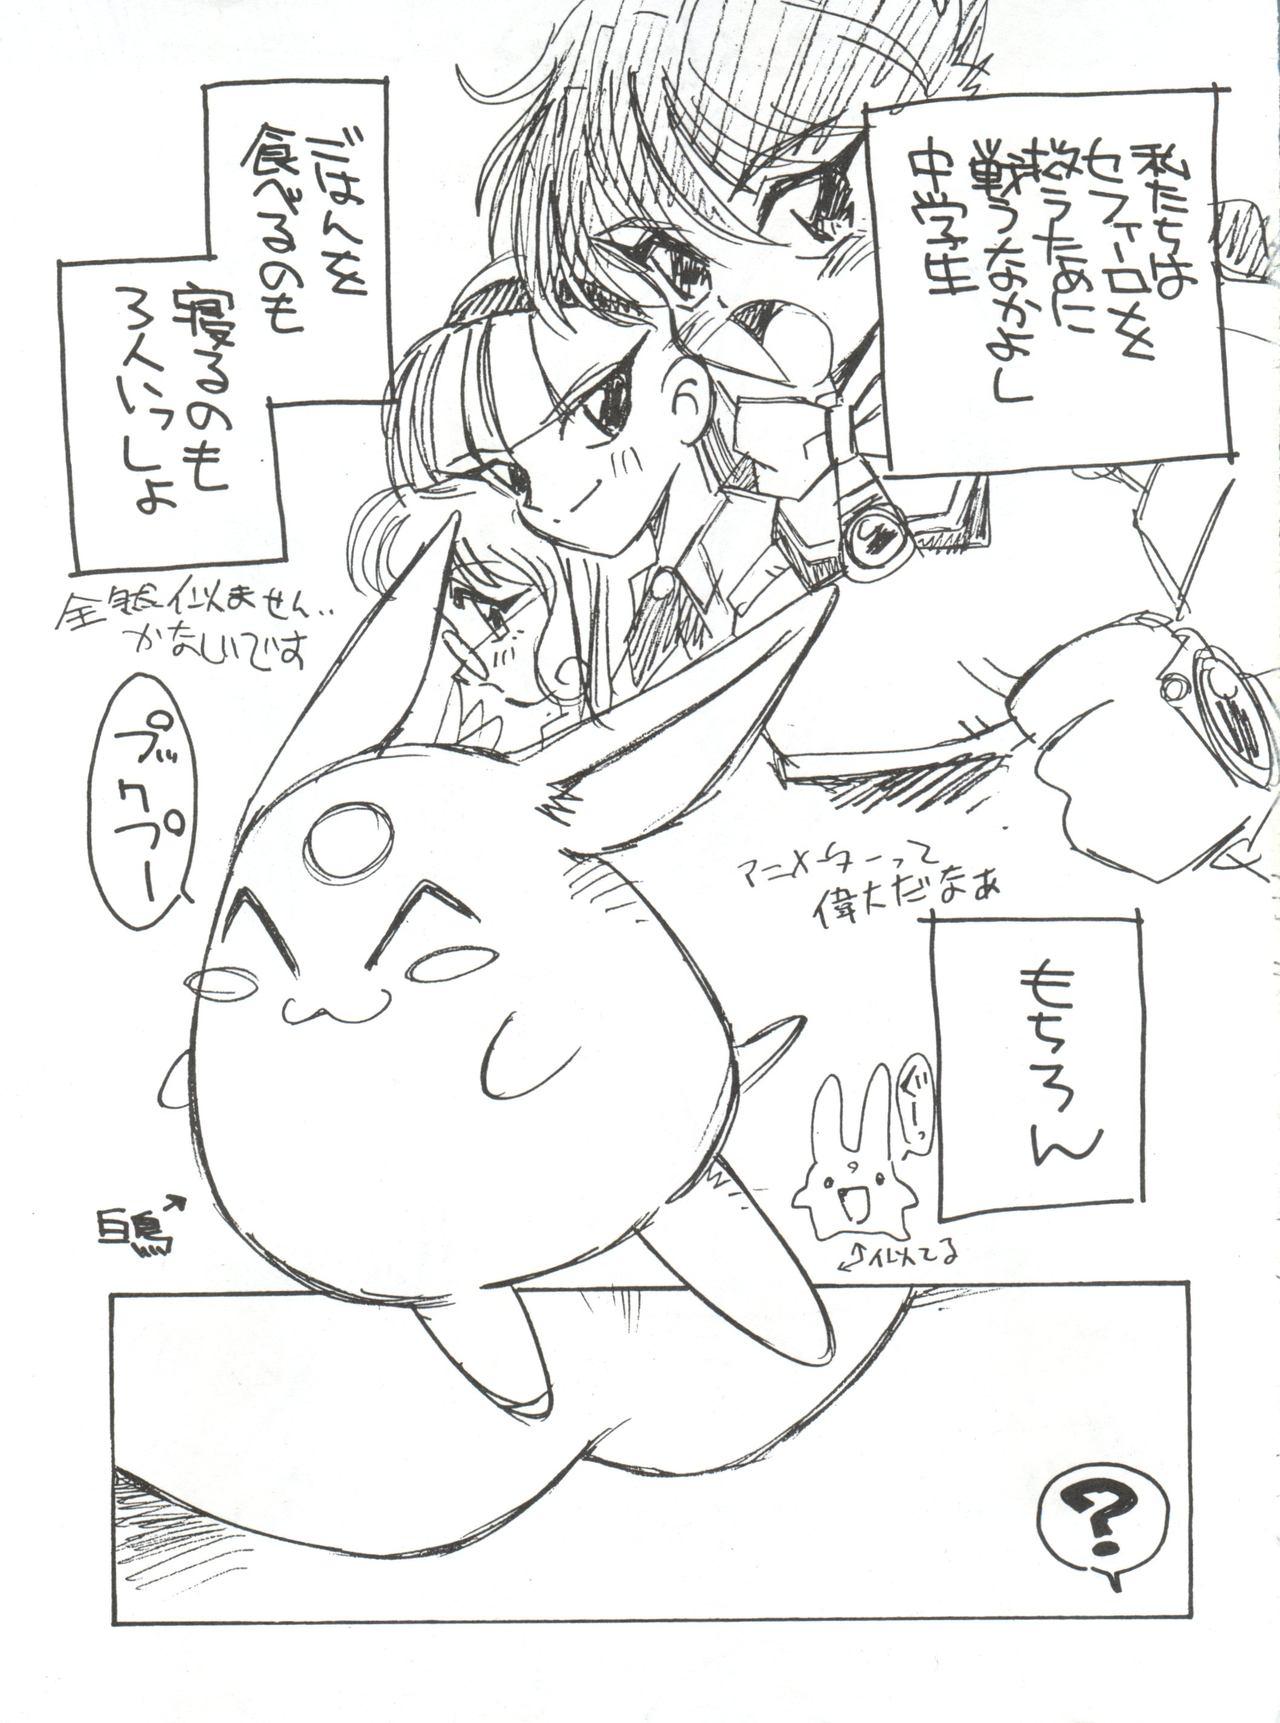 Stepfather Zokuzoku Sanbiki ga Kiru! Shiratori wa Seifu no Inu - Magic knight rayearth And - Page 5